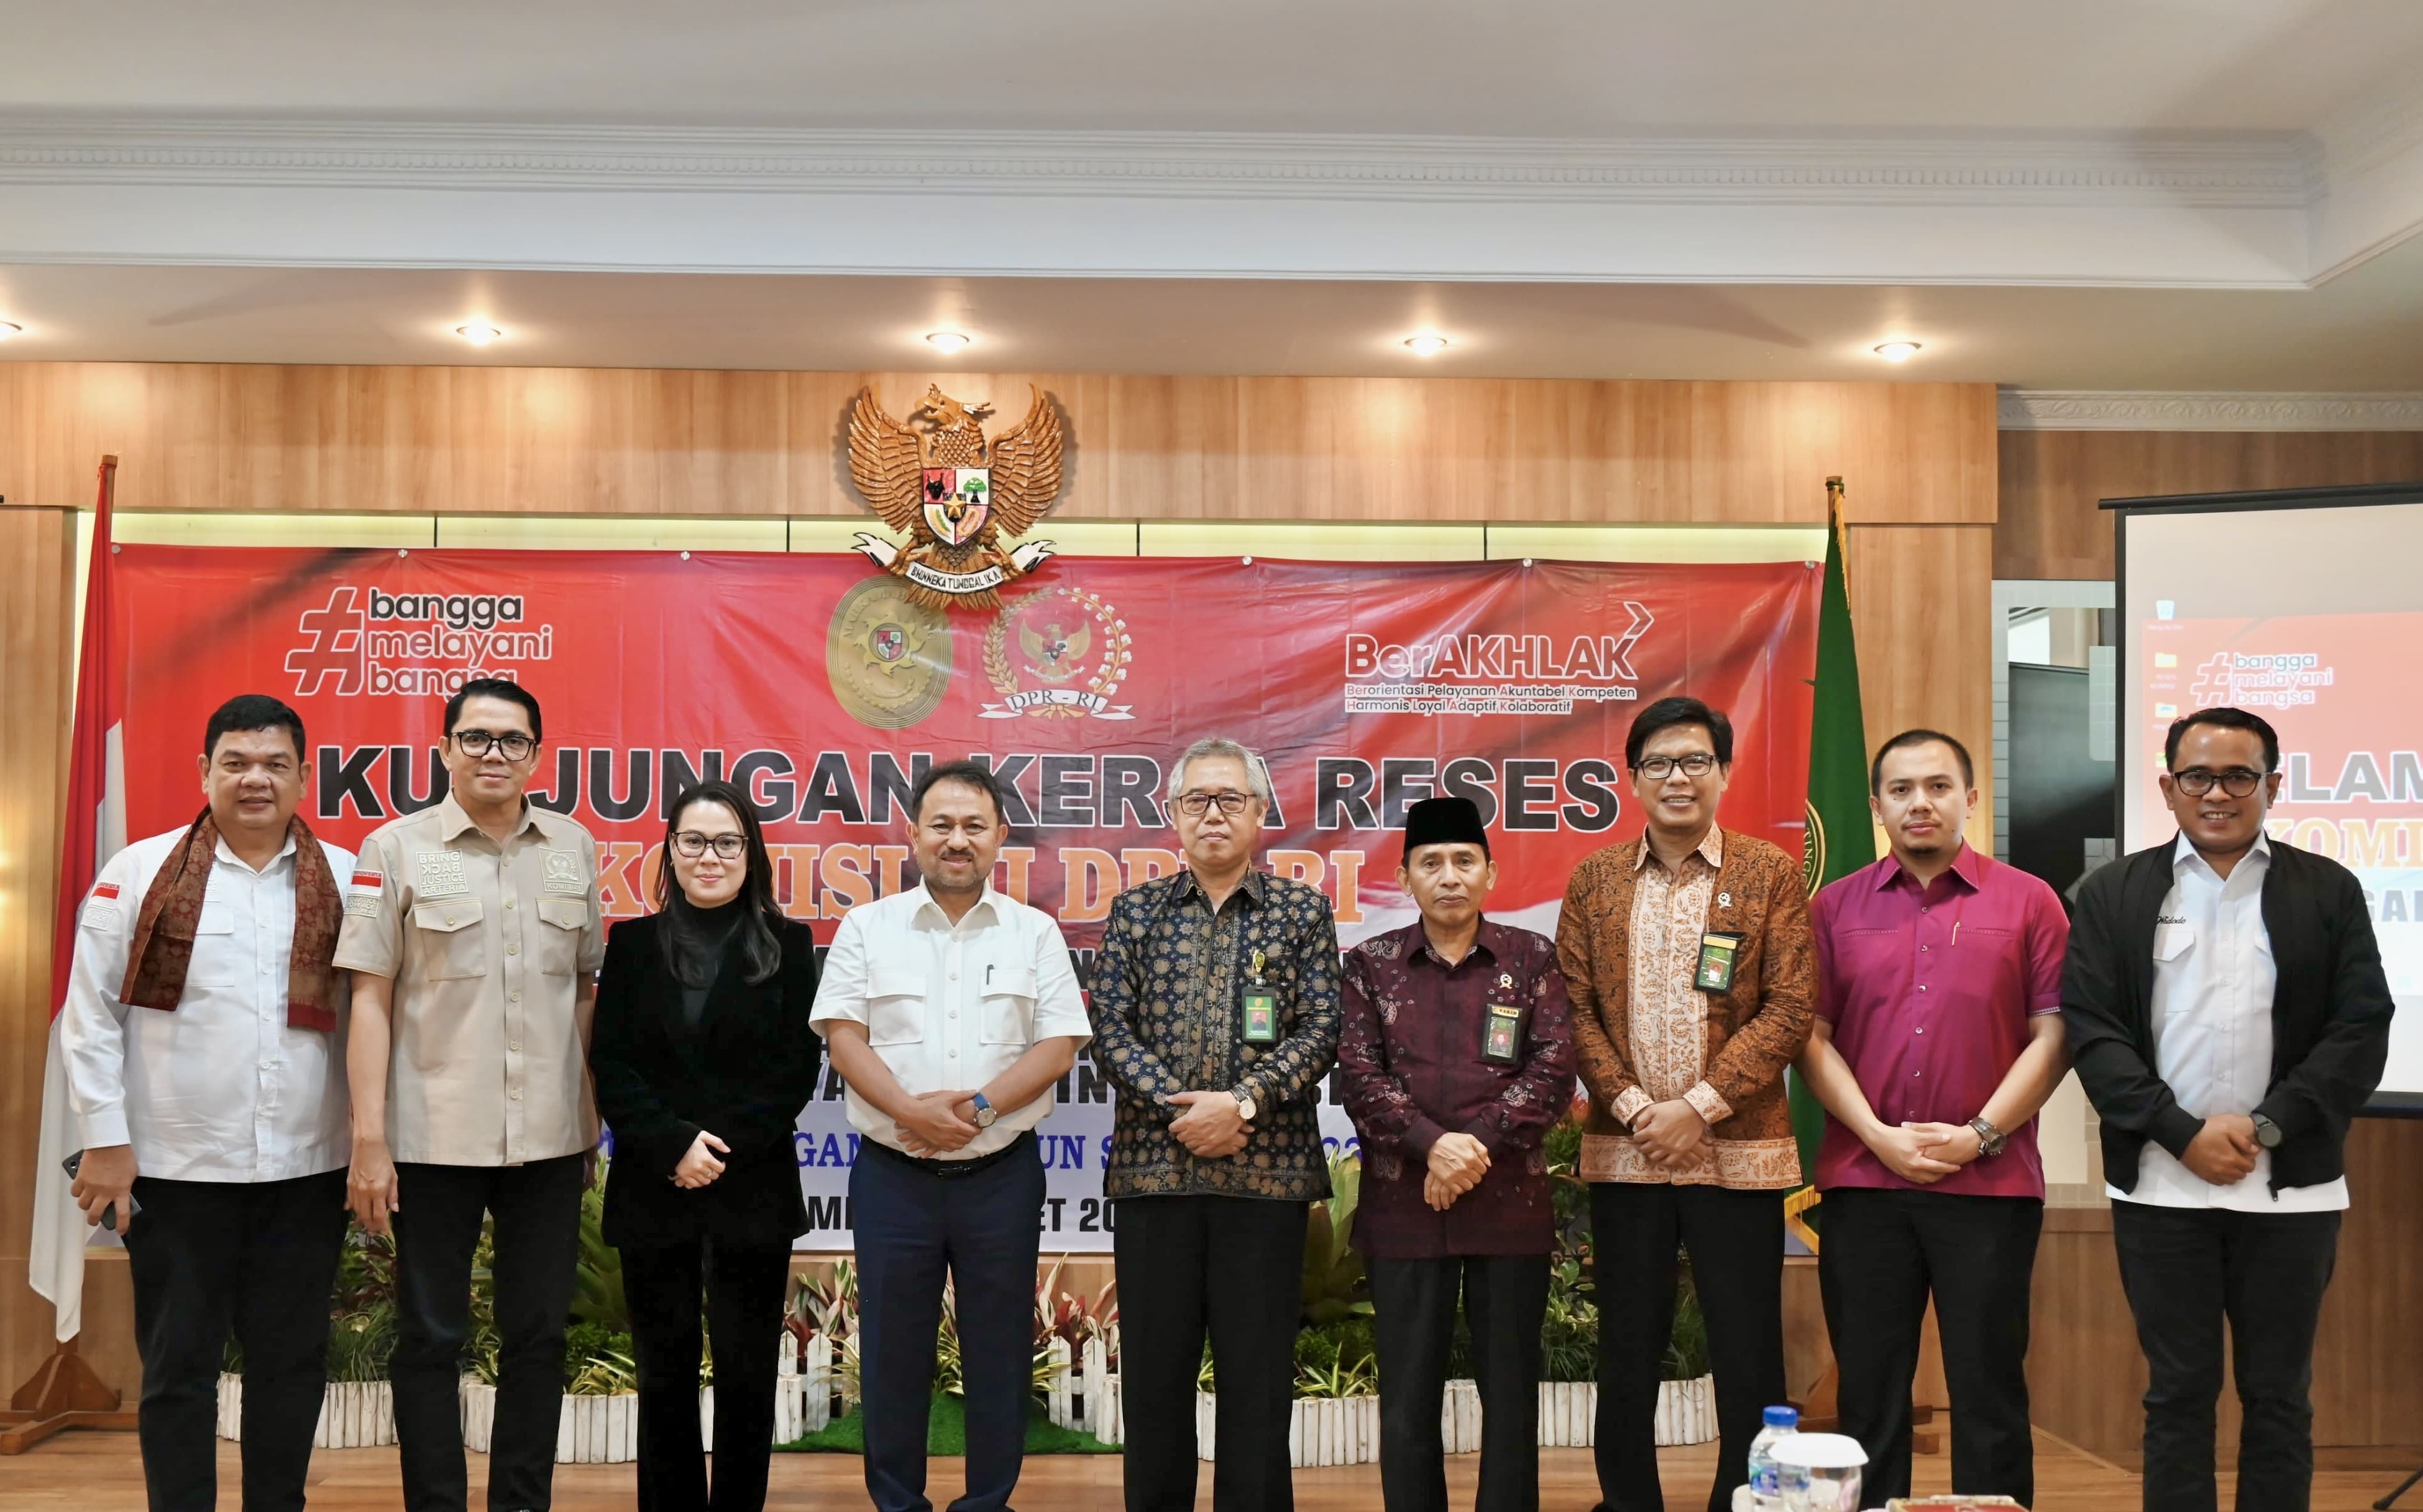 Kunjungan Kerja Reses Komisi III DPR RI Dengan 3 Lingkungan Peradilan se Wilayah Provinsi Jambi